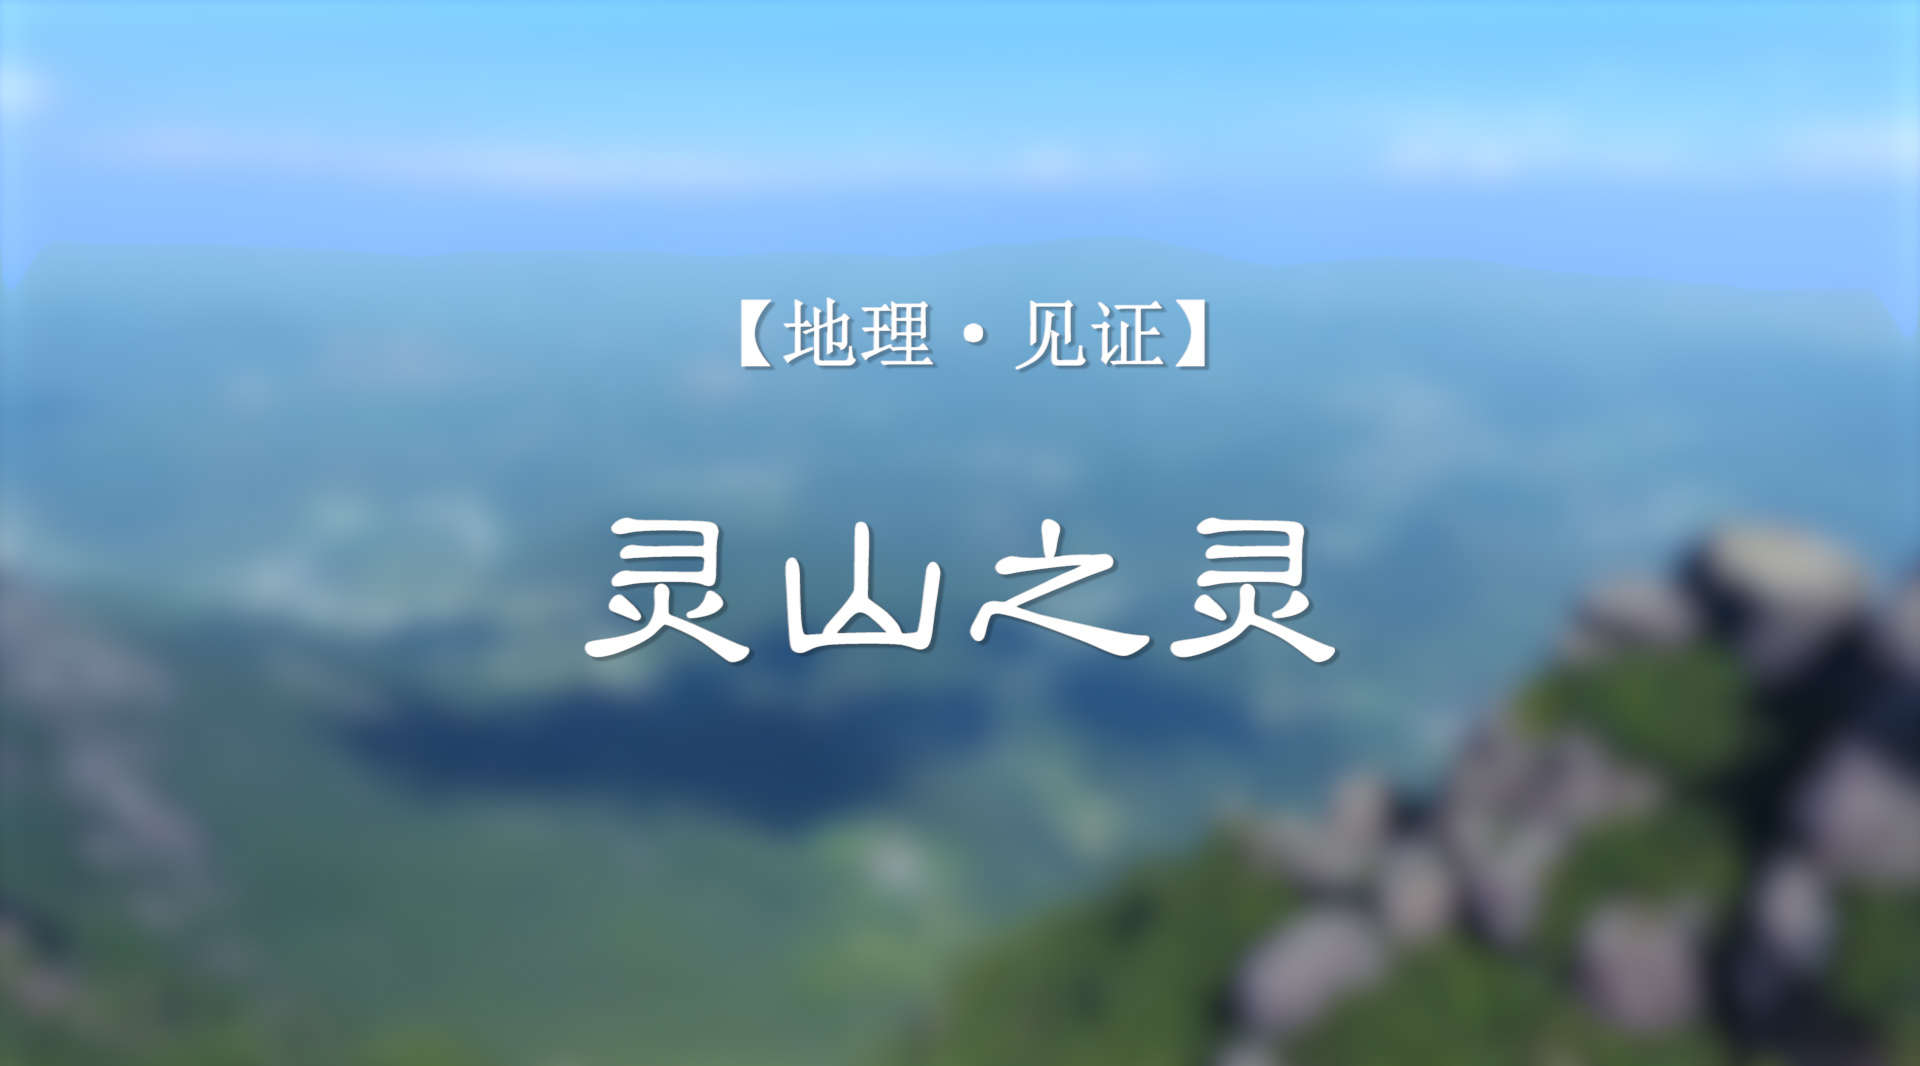 国家旅游地理纪录片《灵山之灵》